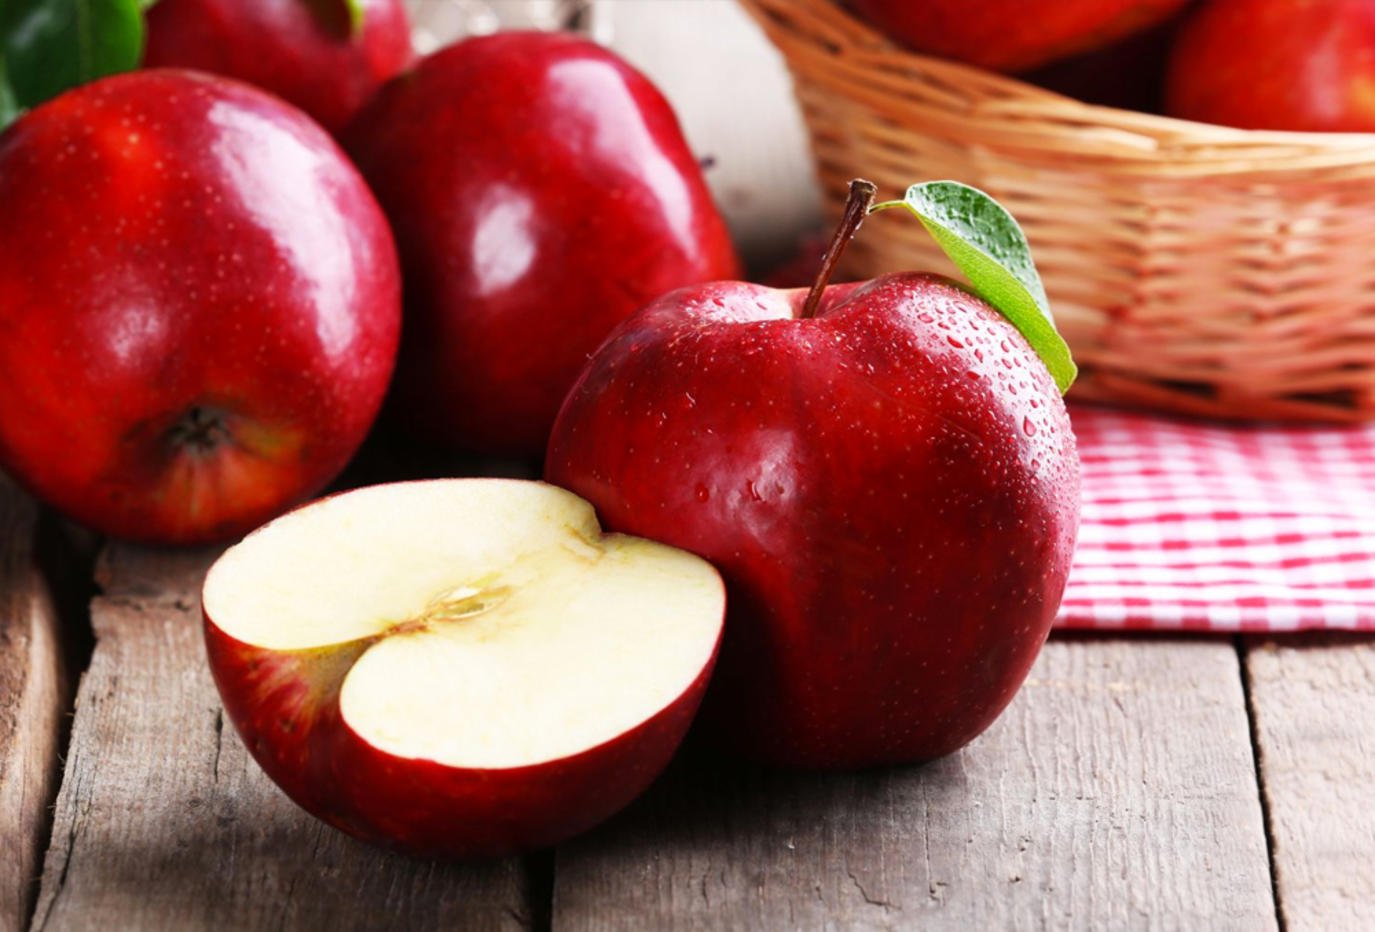 التفاح وما يحتويه من فيتامينات وفوائد 2022